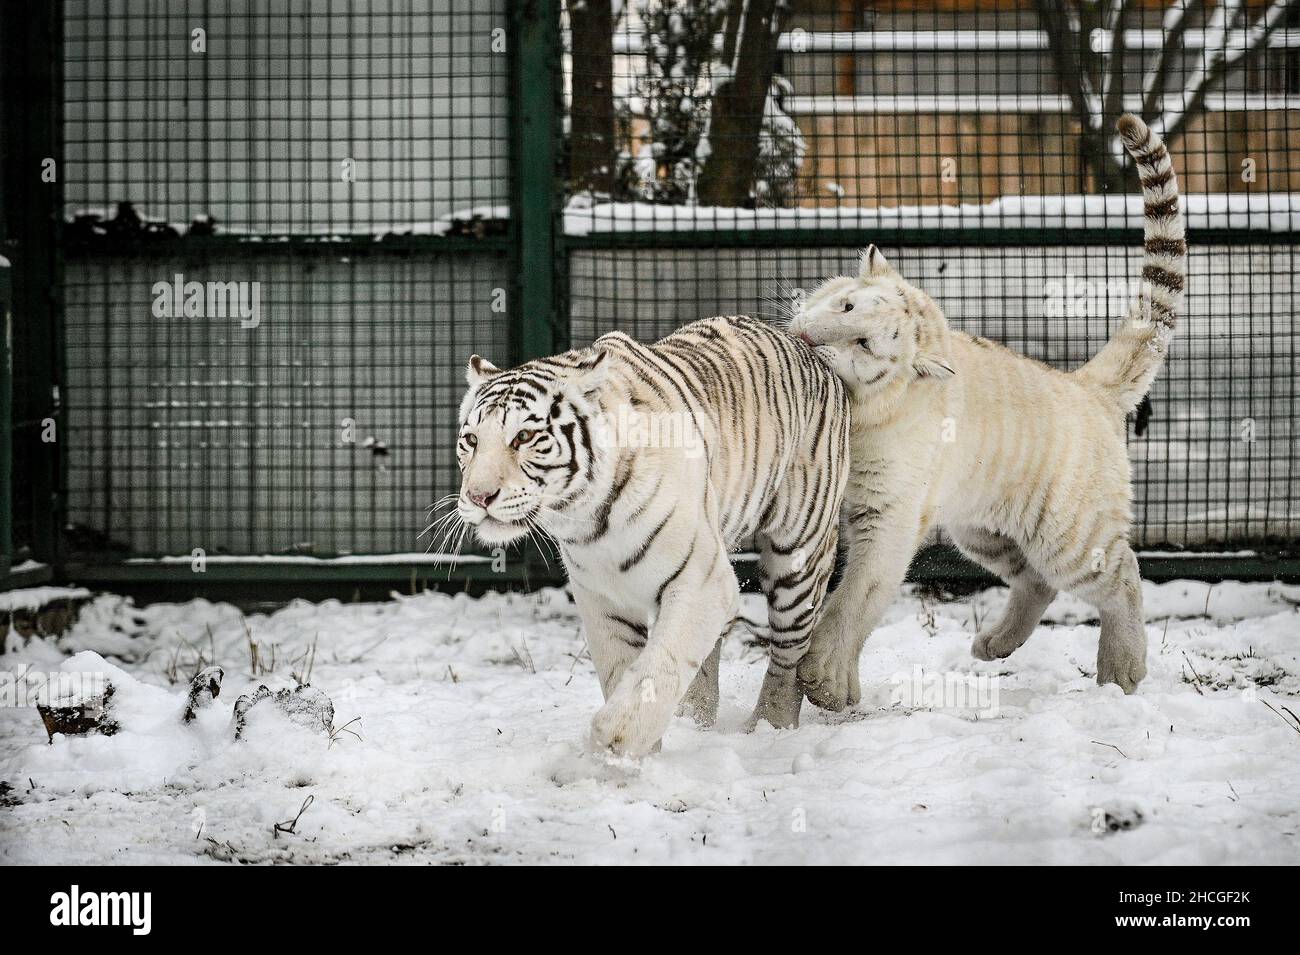 BERDIANSK, UKRAINE - 27 DÉCEMBRE 2021 - deux tigres blancs jouent dans la neige dans un zoo, Berdiansk, région de Zaporizhzhia, sud-est de l'Ukraine. Banque D'Images